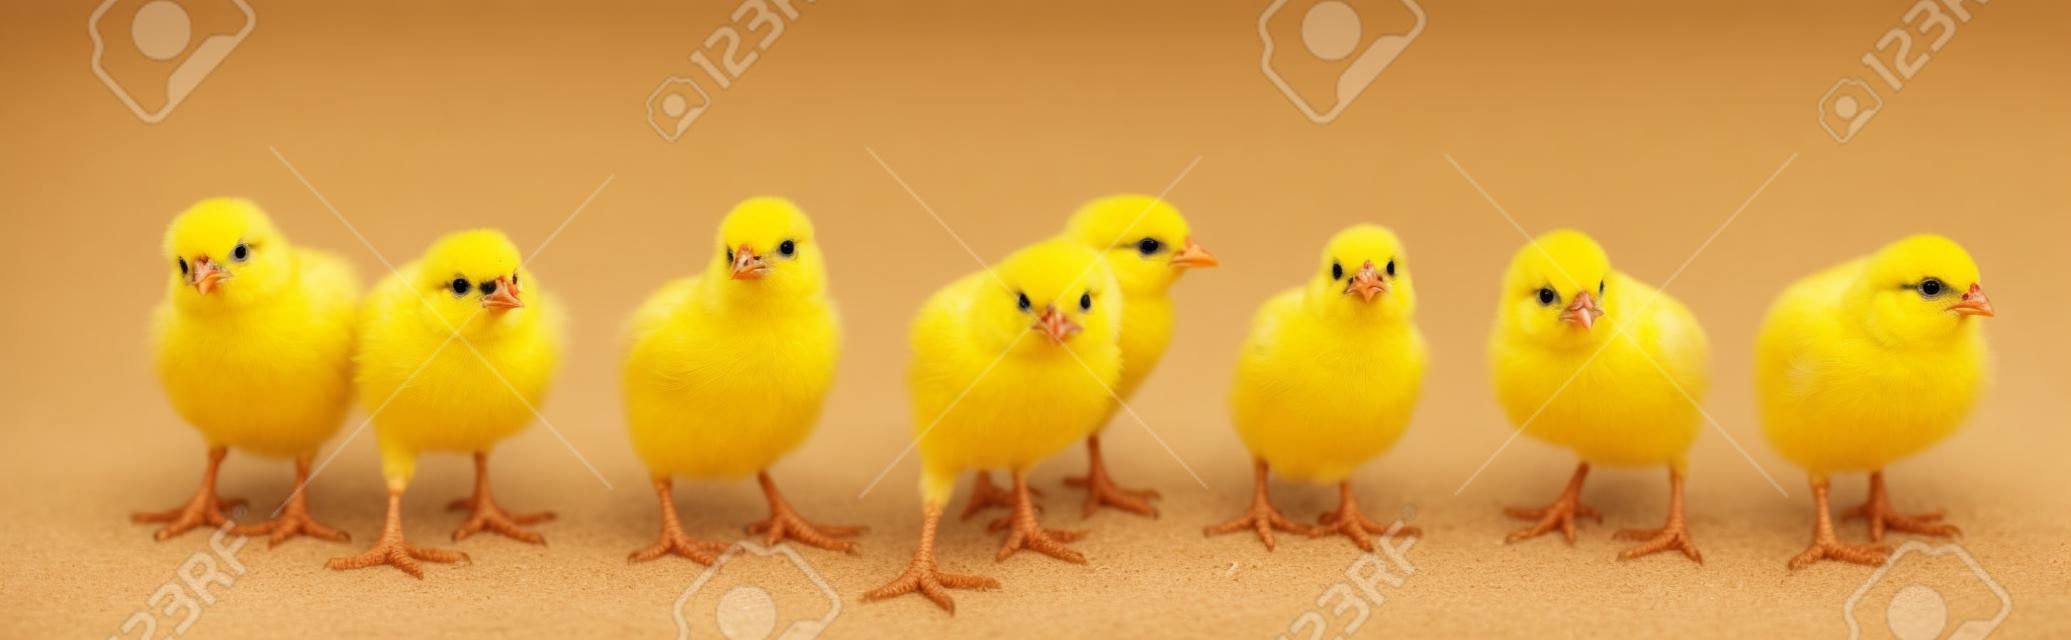 Soğuk papağan küçük sarı civcivler, beyaz zemin üzerinde izole. Çiftlik kuluçka makinesi yürümekte tavuklar.